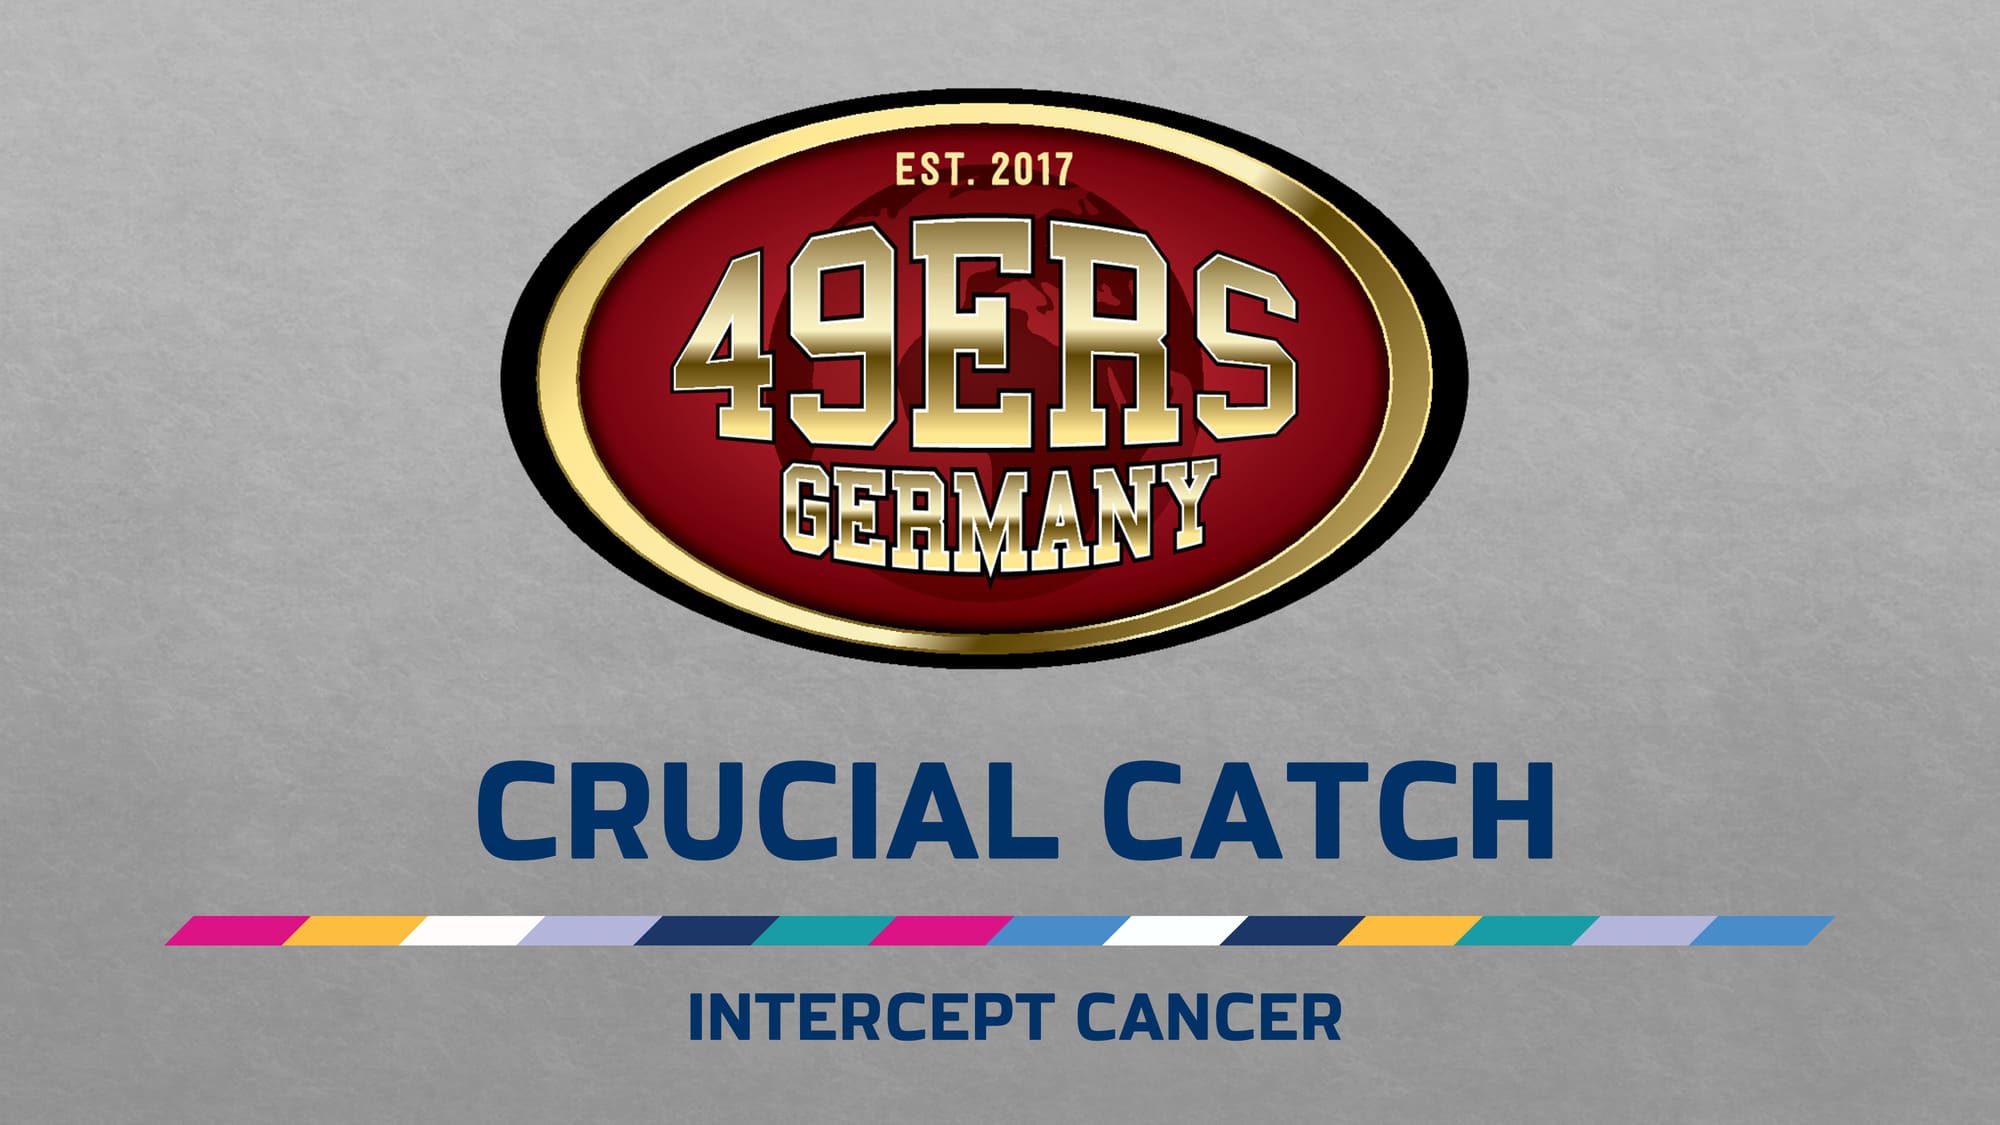 Wichtiger als der Sport Crucial Catch Intercept Cancer 49ers Germany